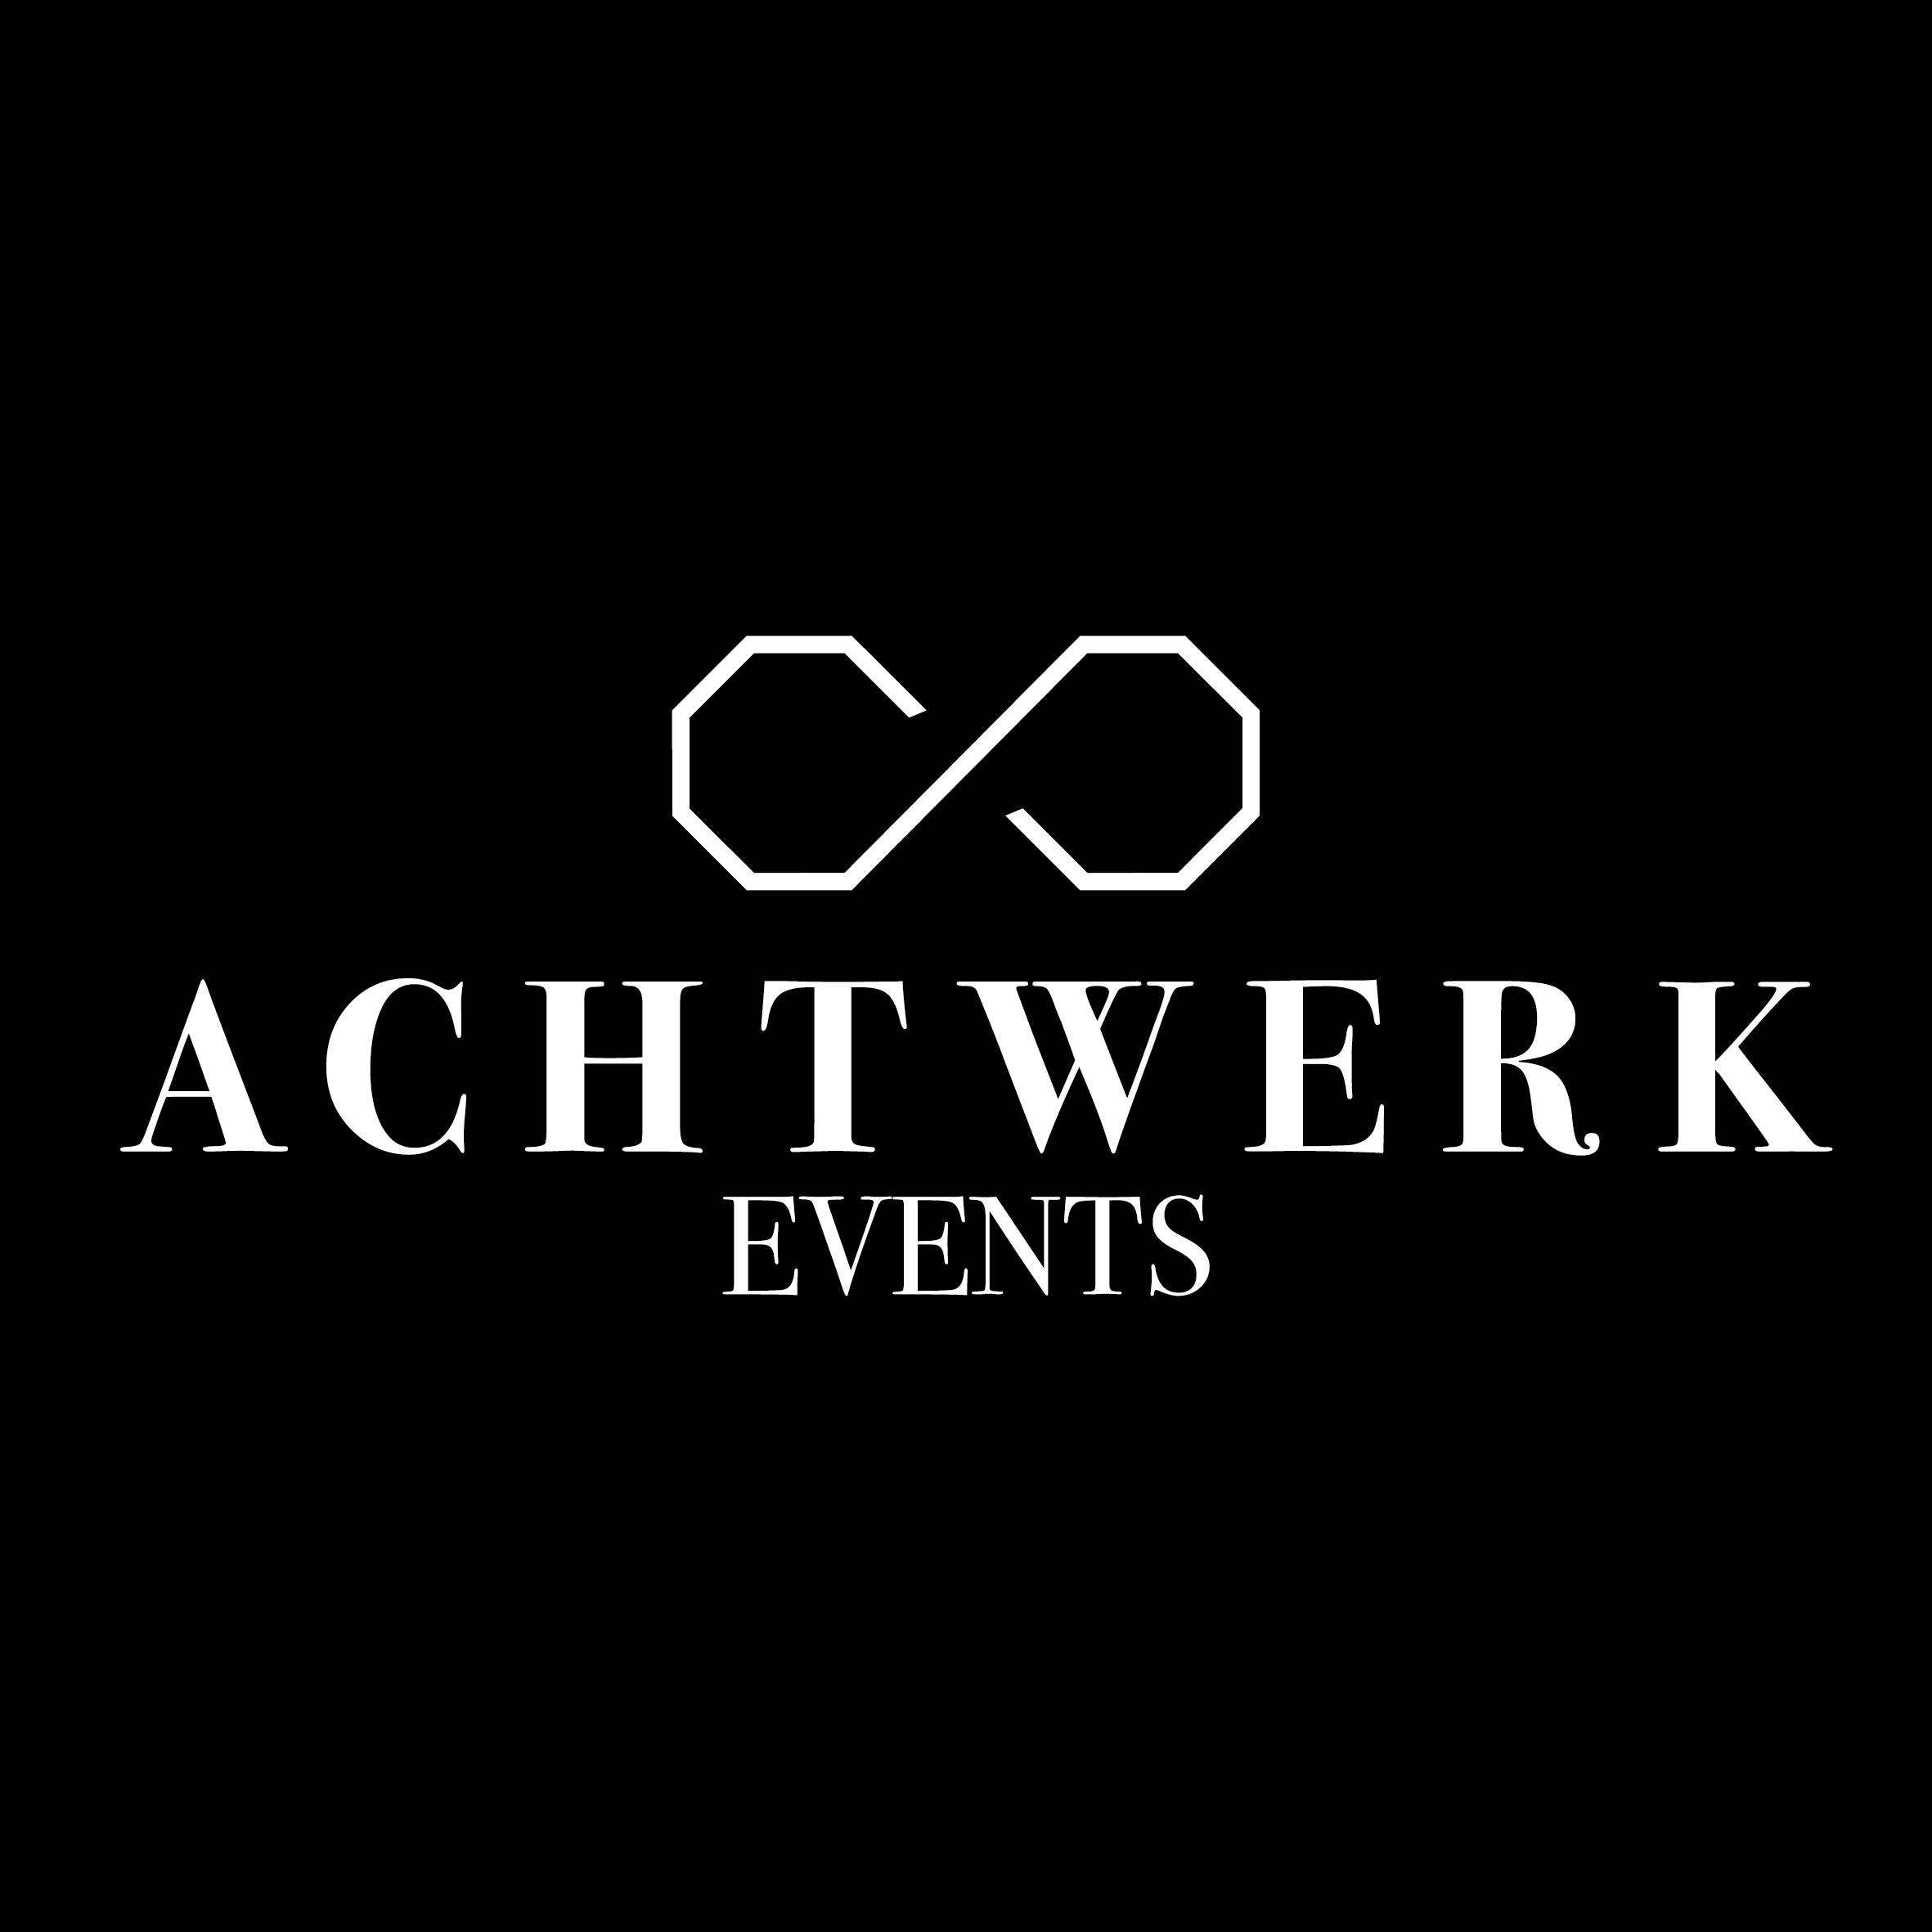 Achtwerk Events